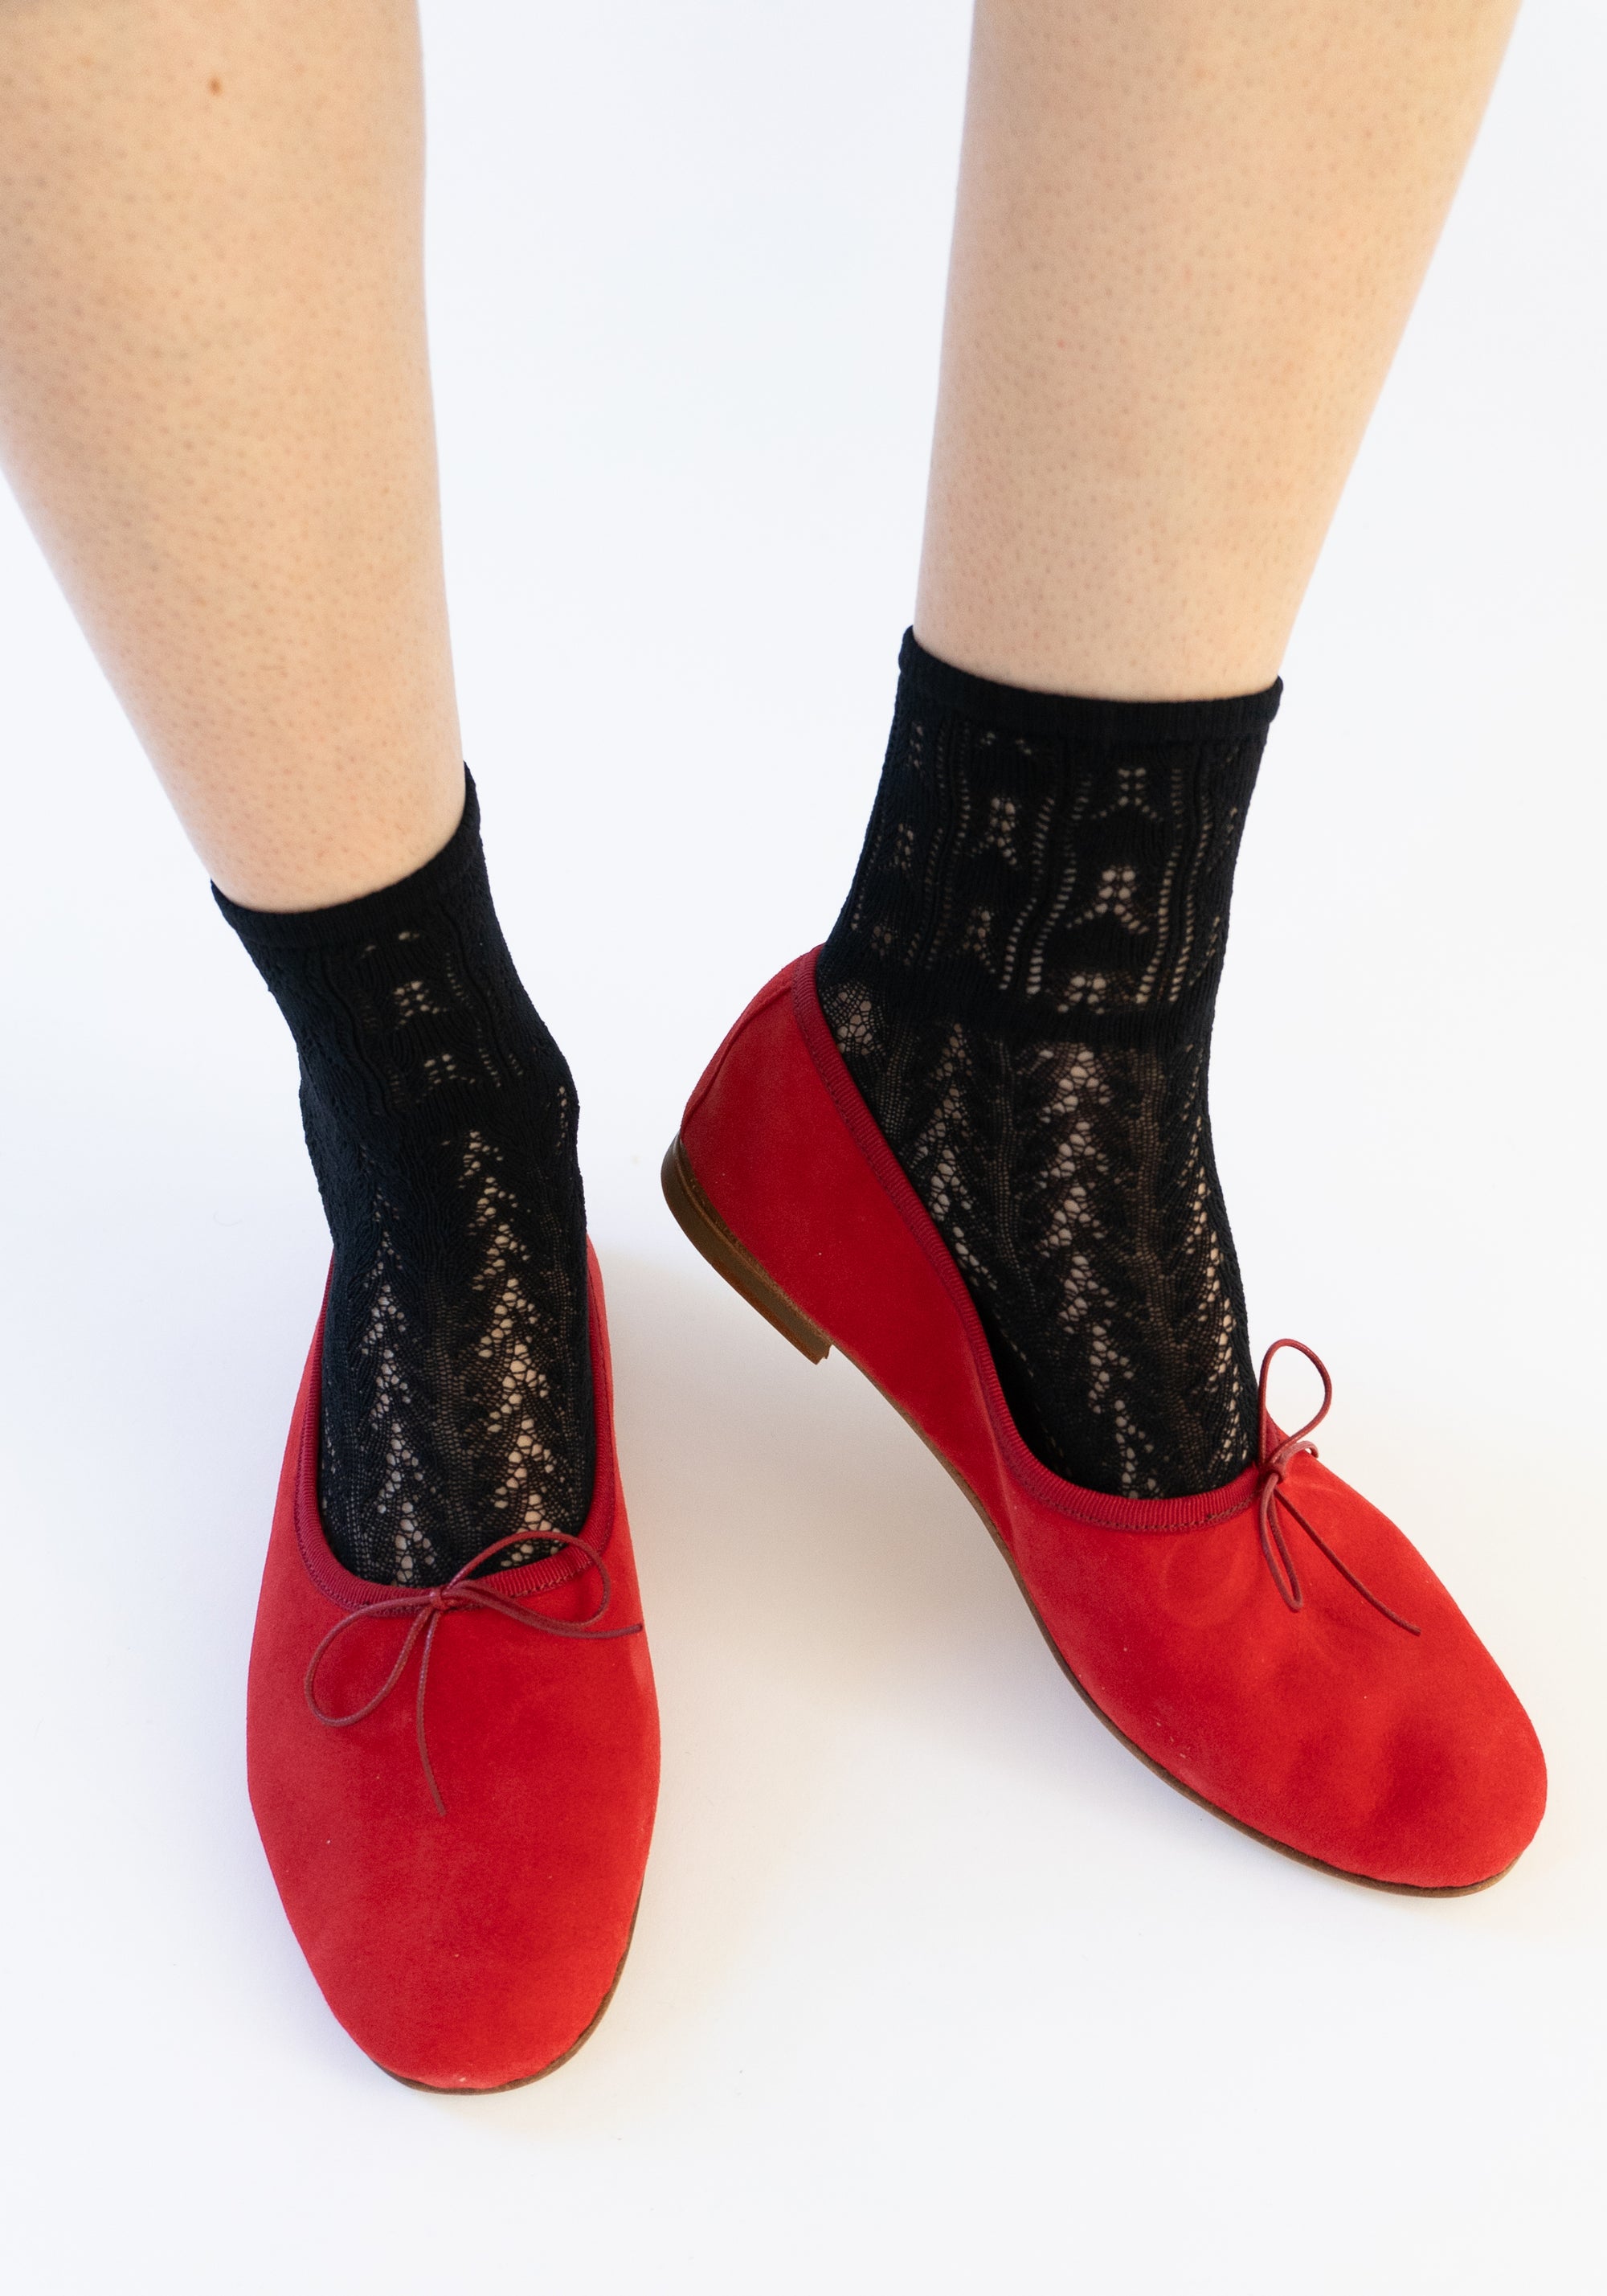 Erica Crochet Socks in Black